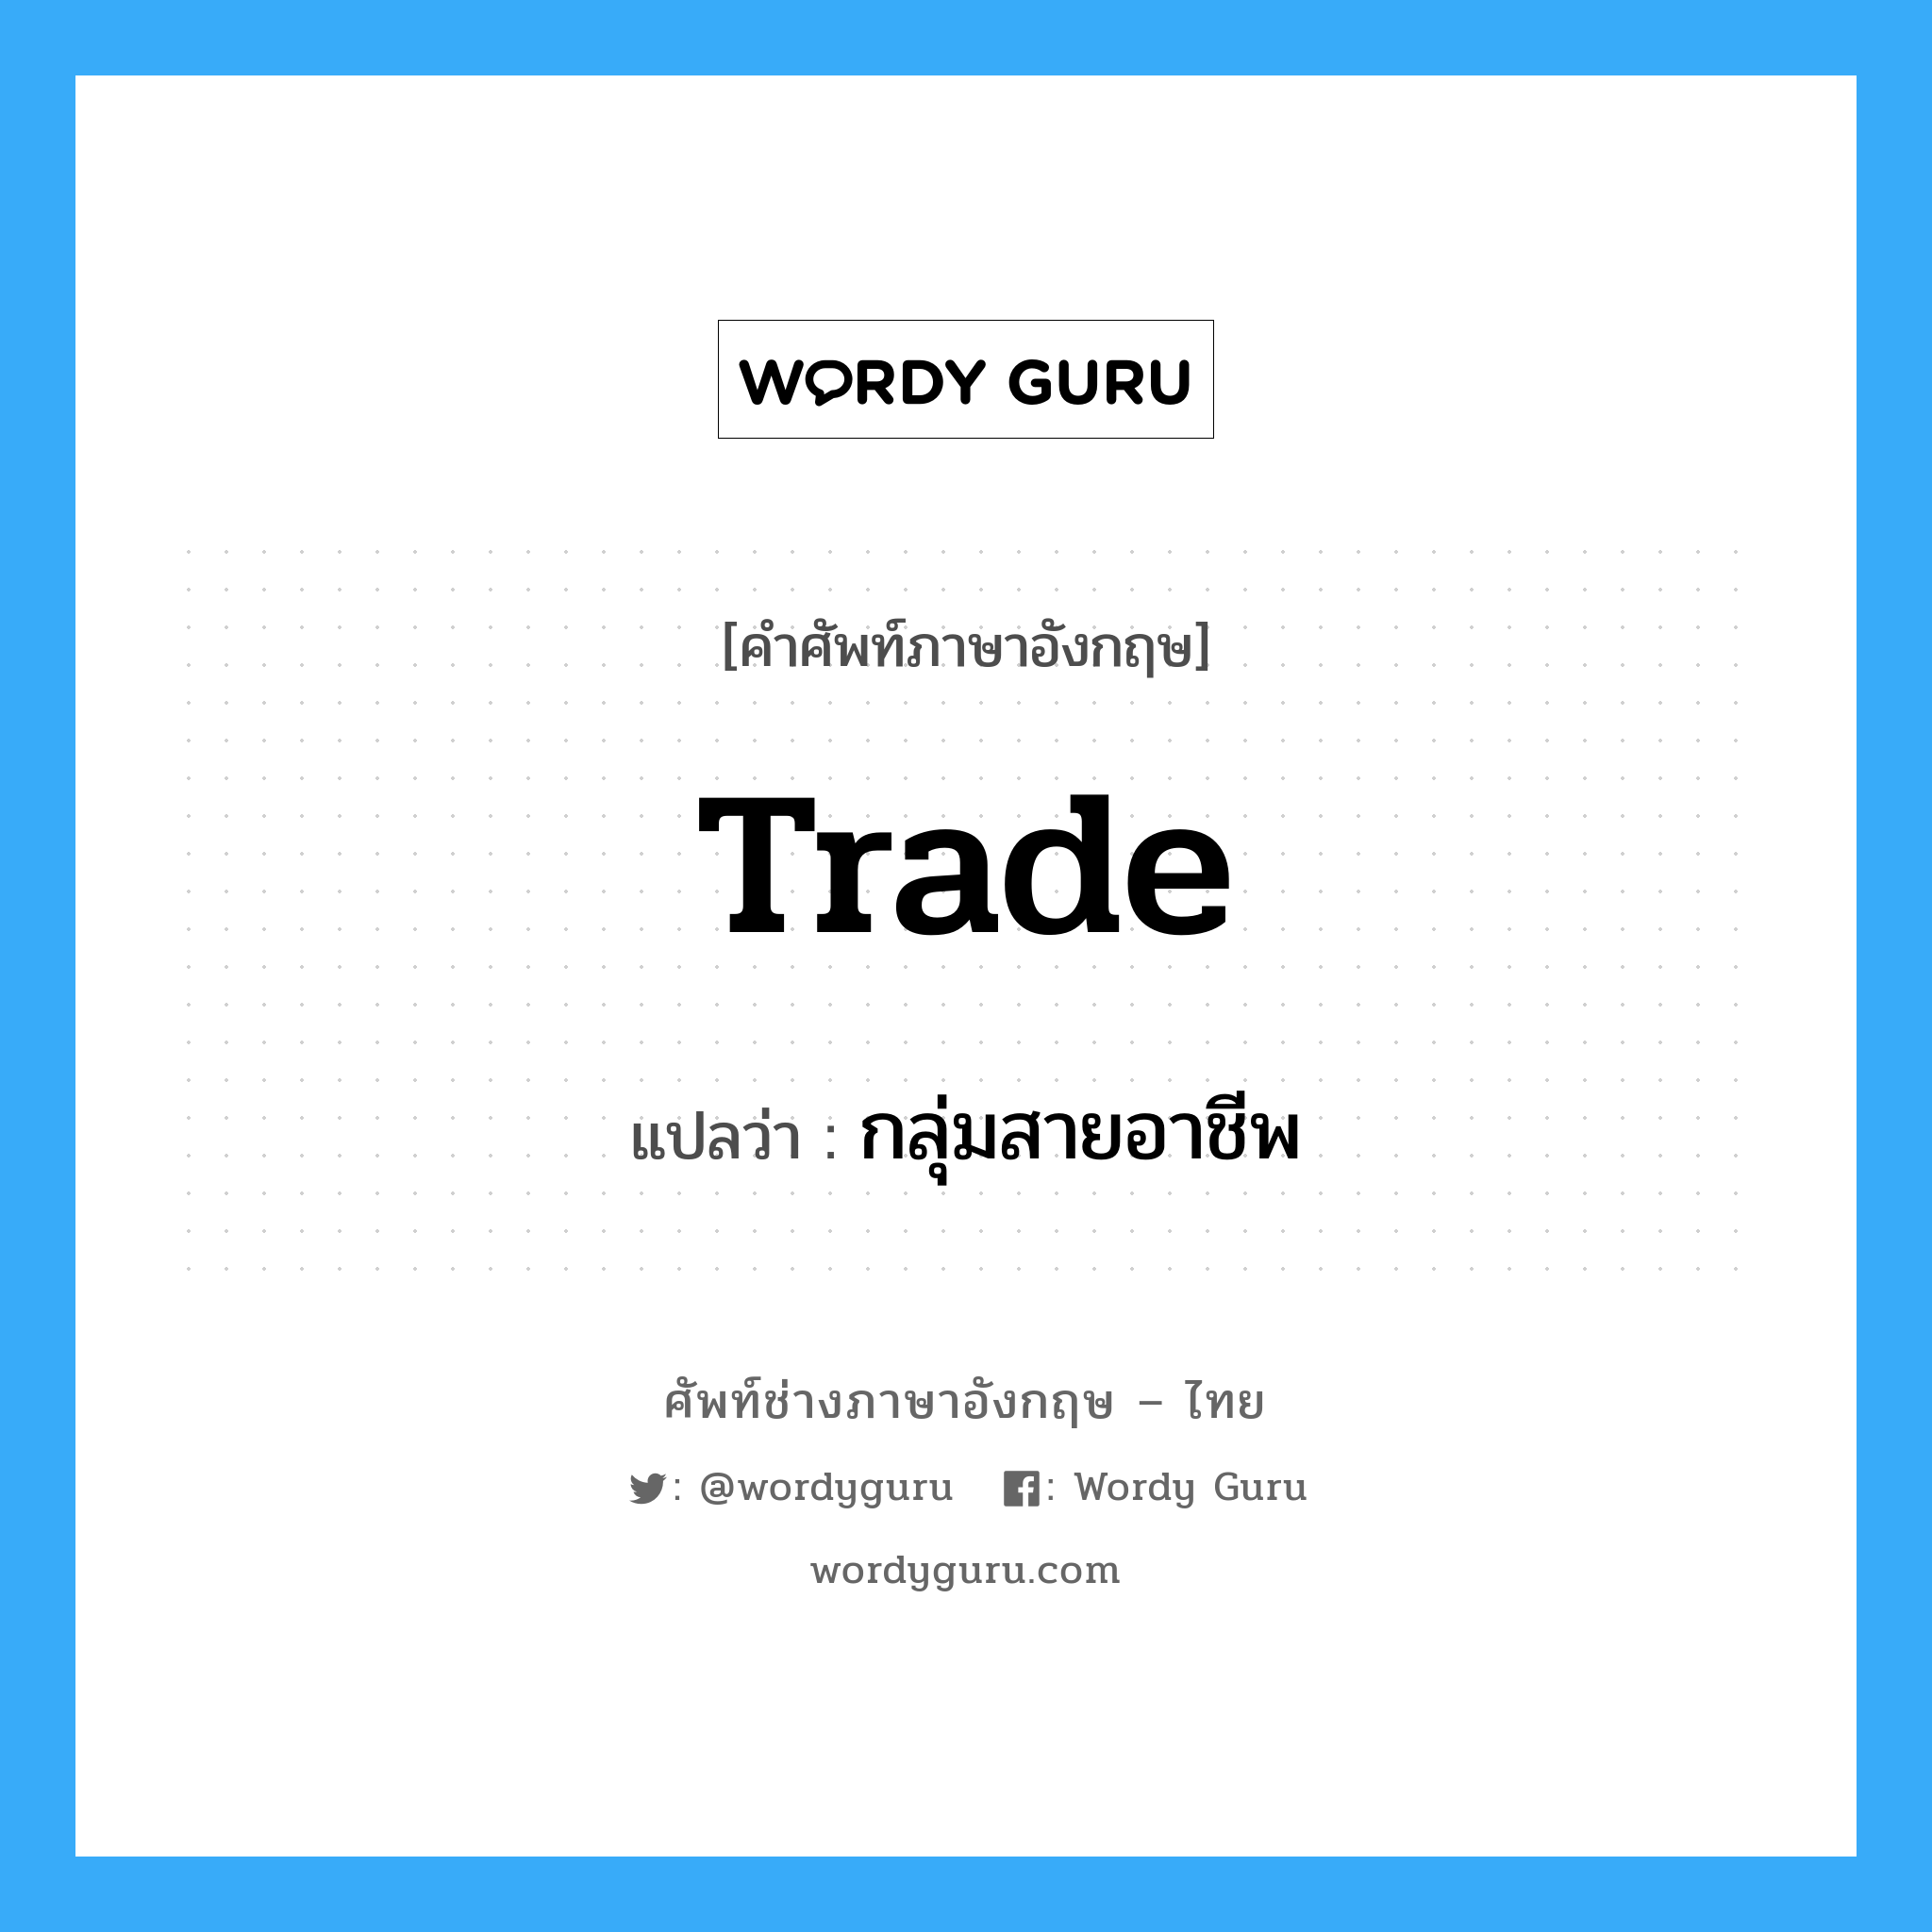 Trade แปลว่า?, คำศัพท์ช่างภาษาอังกฤษ - ไทย Trade คำศัพท์ภาษาอังกฤษ Trade แปลว่า กลุ่มสายอาชีพ